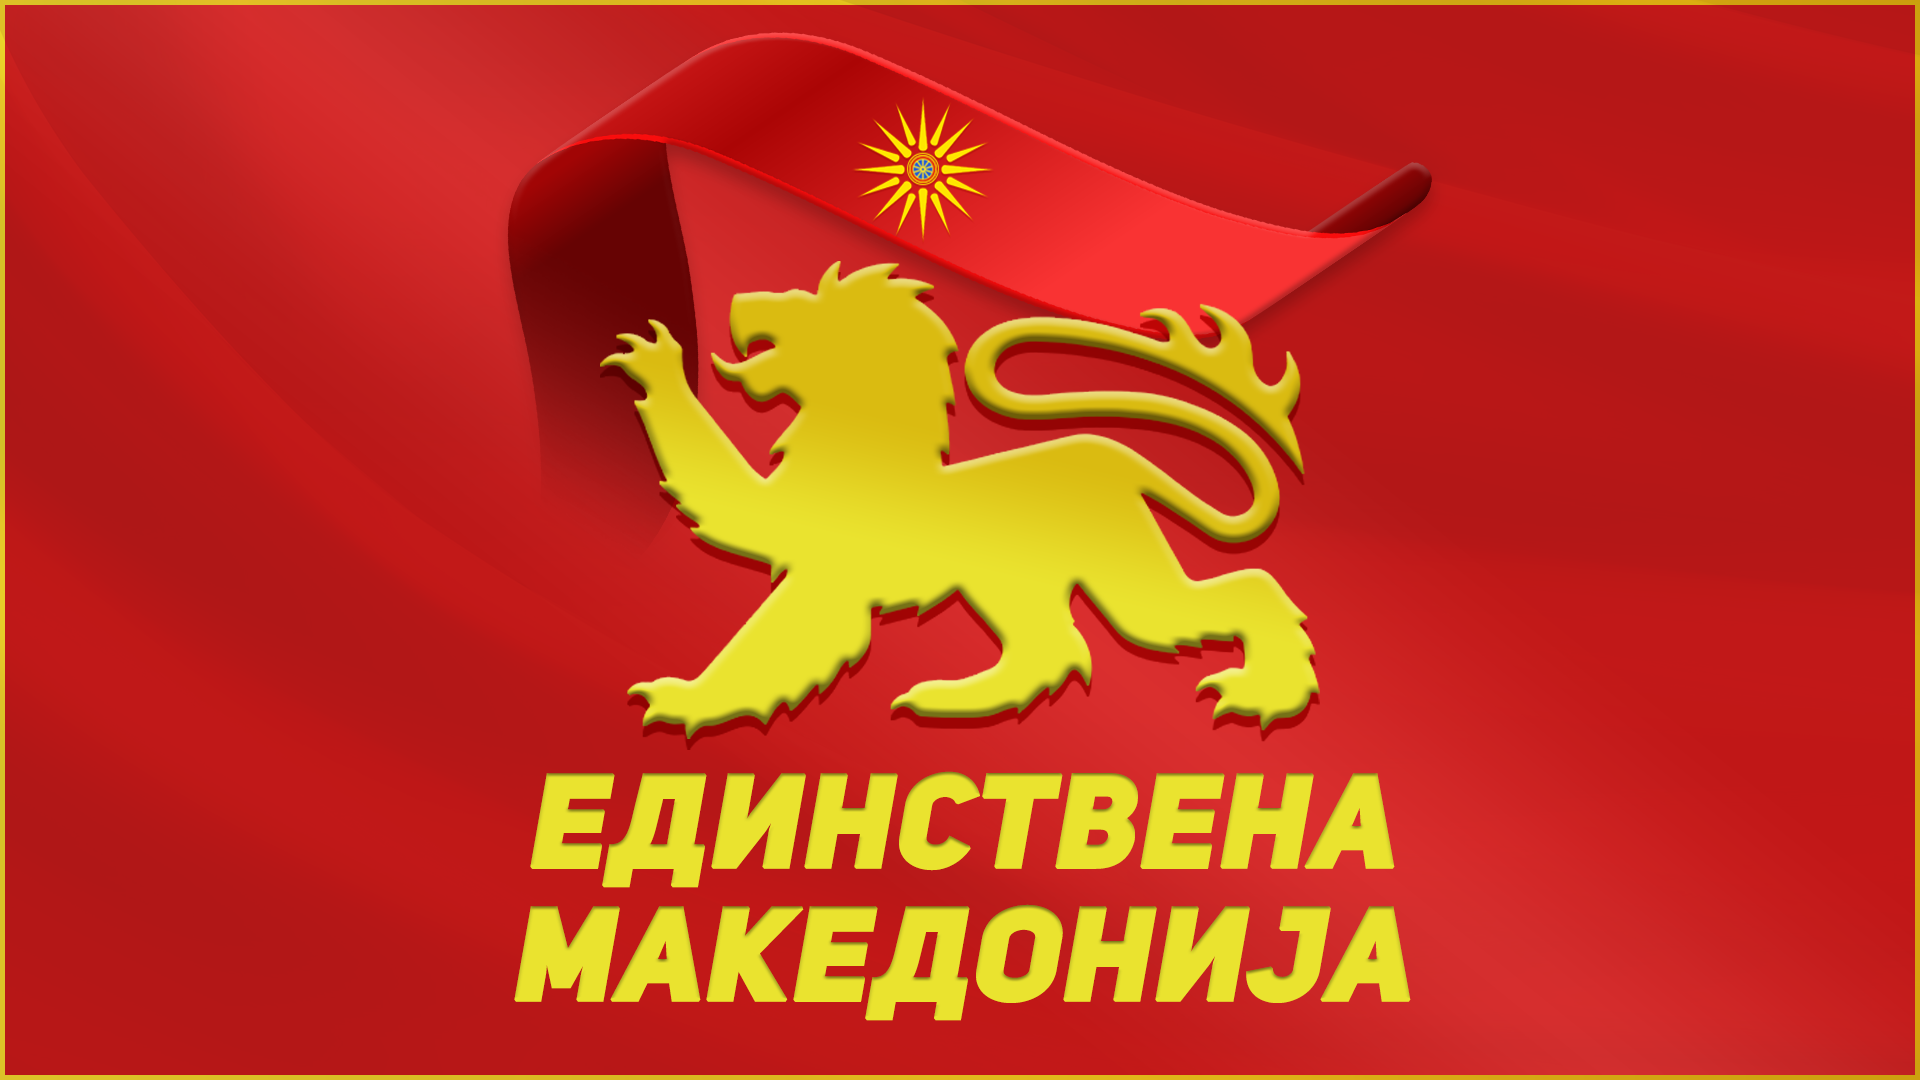 Единствена Македонија и статутарно се ребрендираше, ја усвои црвената боја како боја на партијата